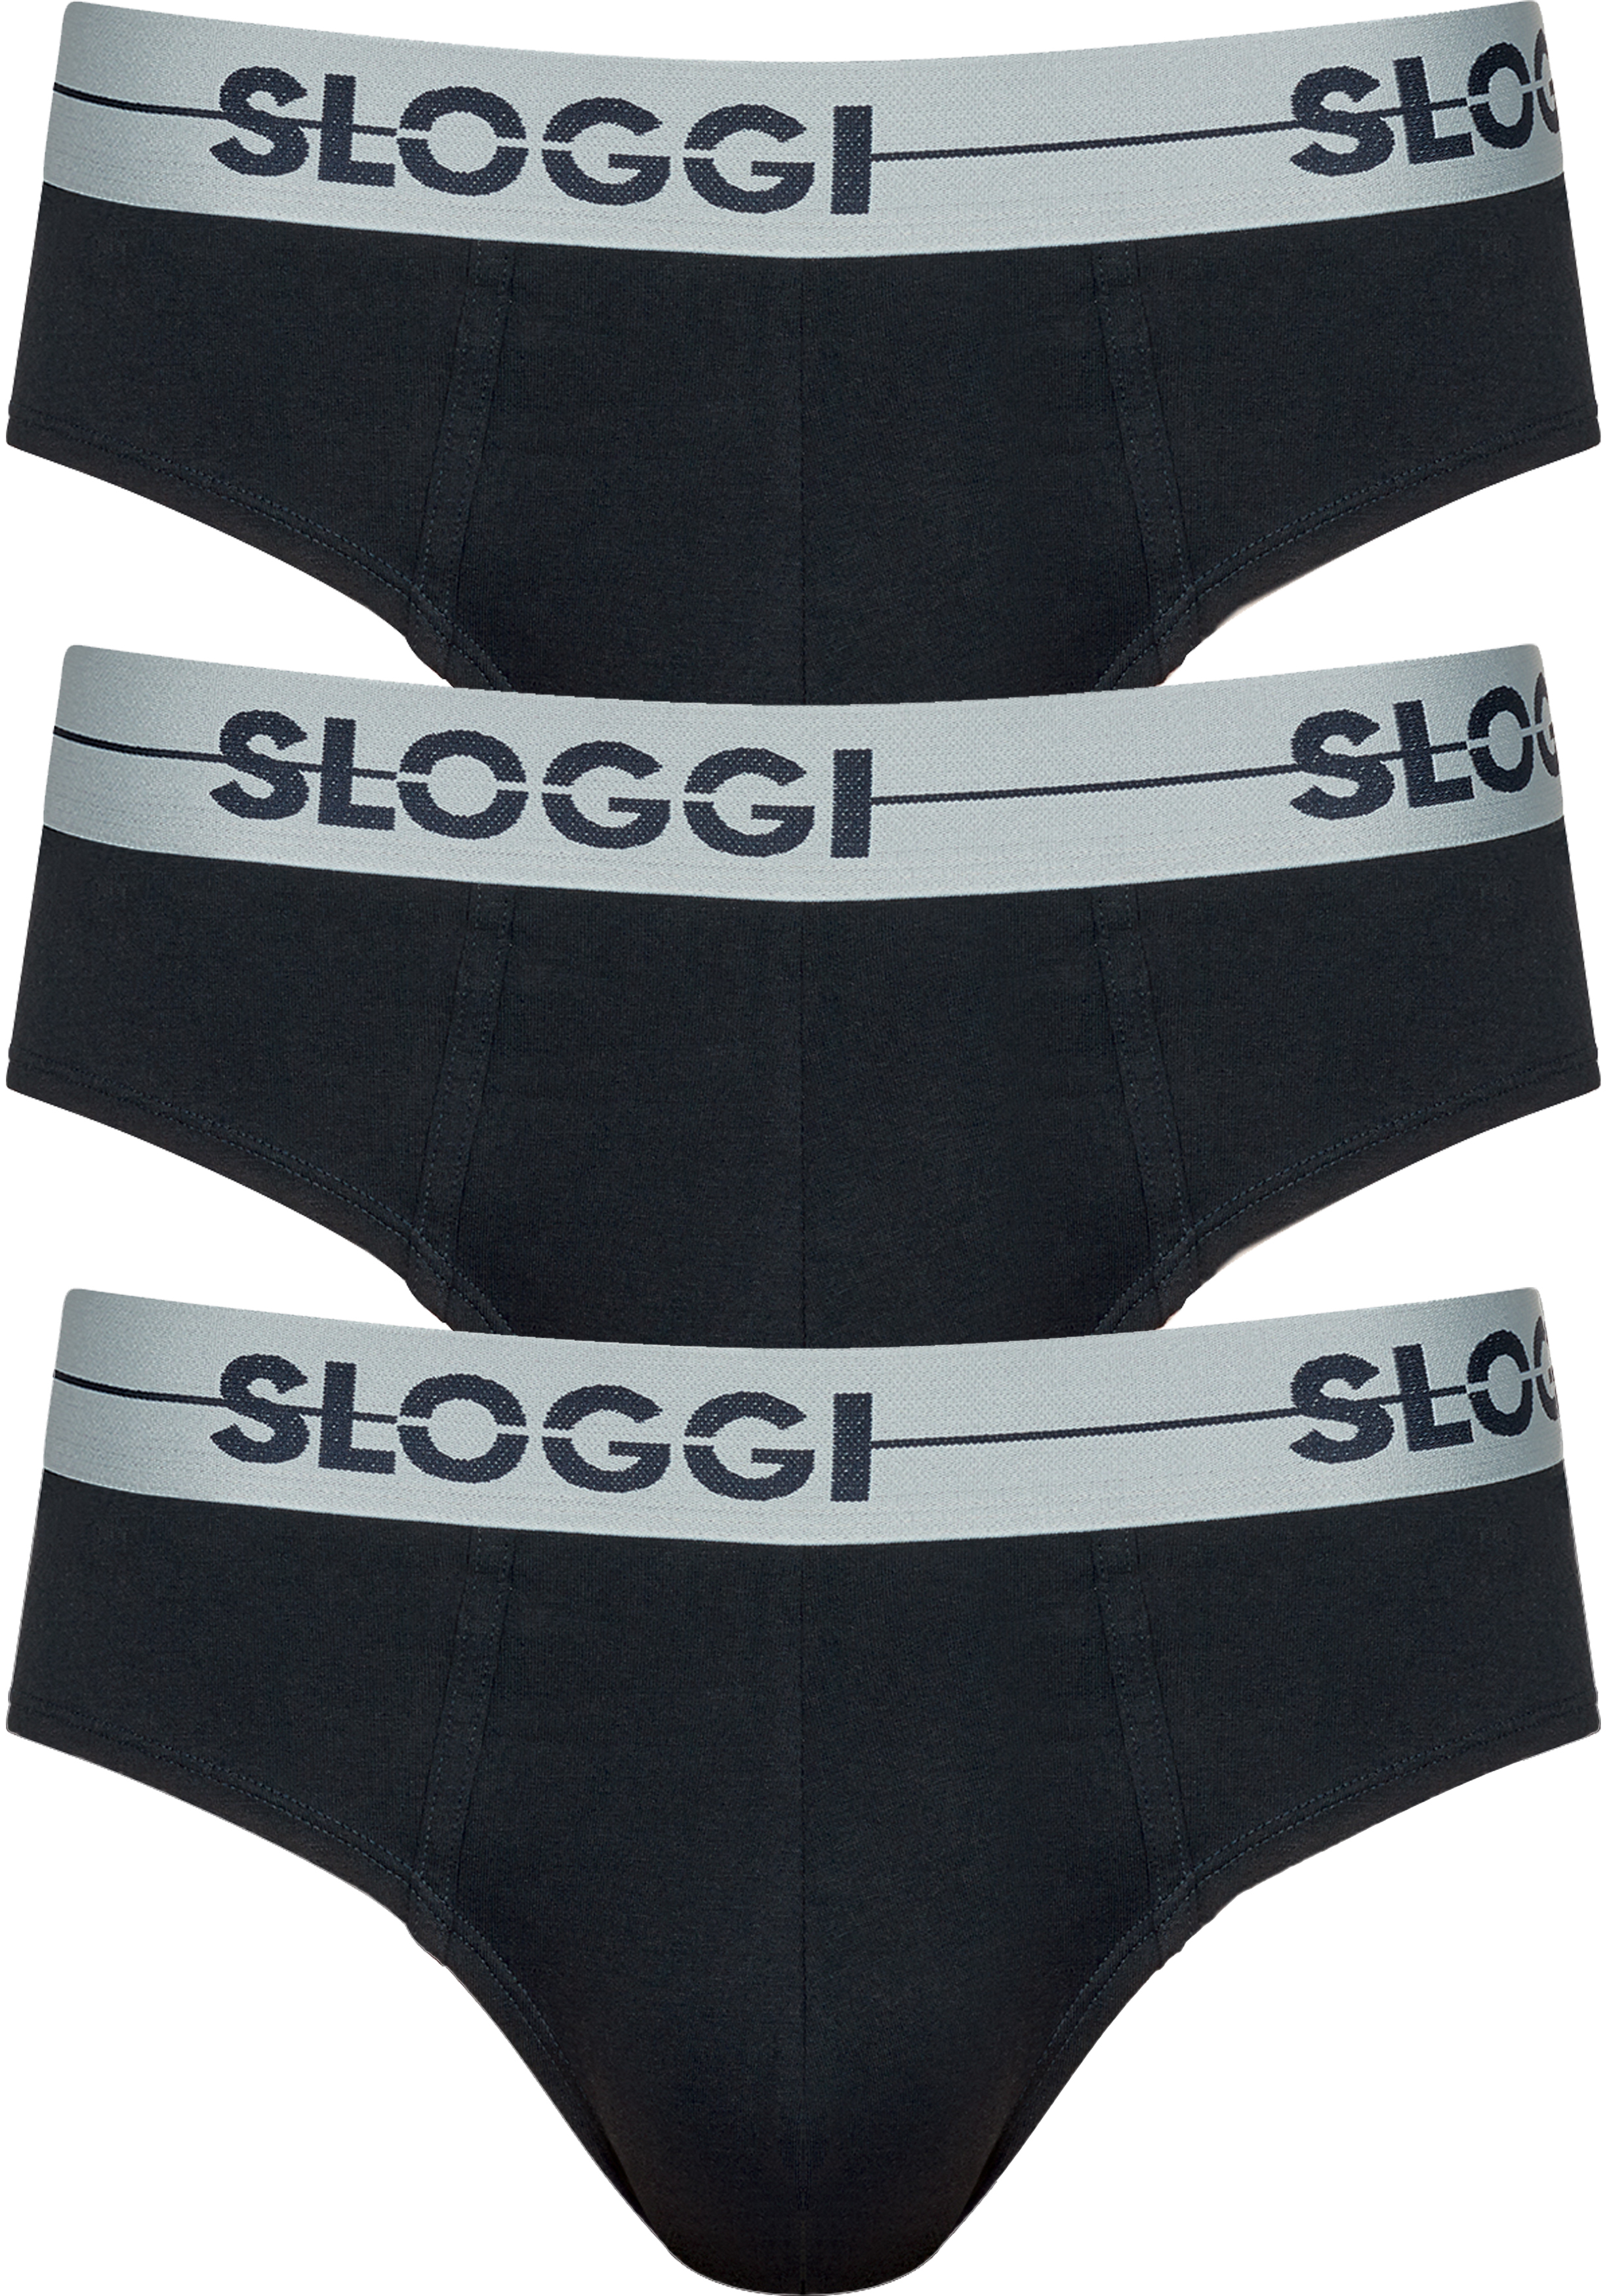 Sloggi Men GO Mini, heren slips (3-pack), zwart